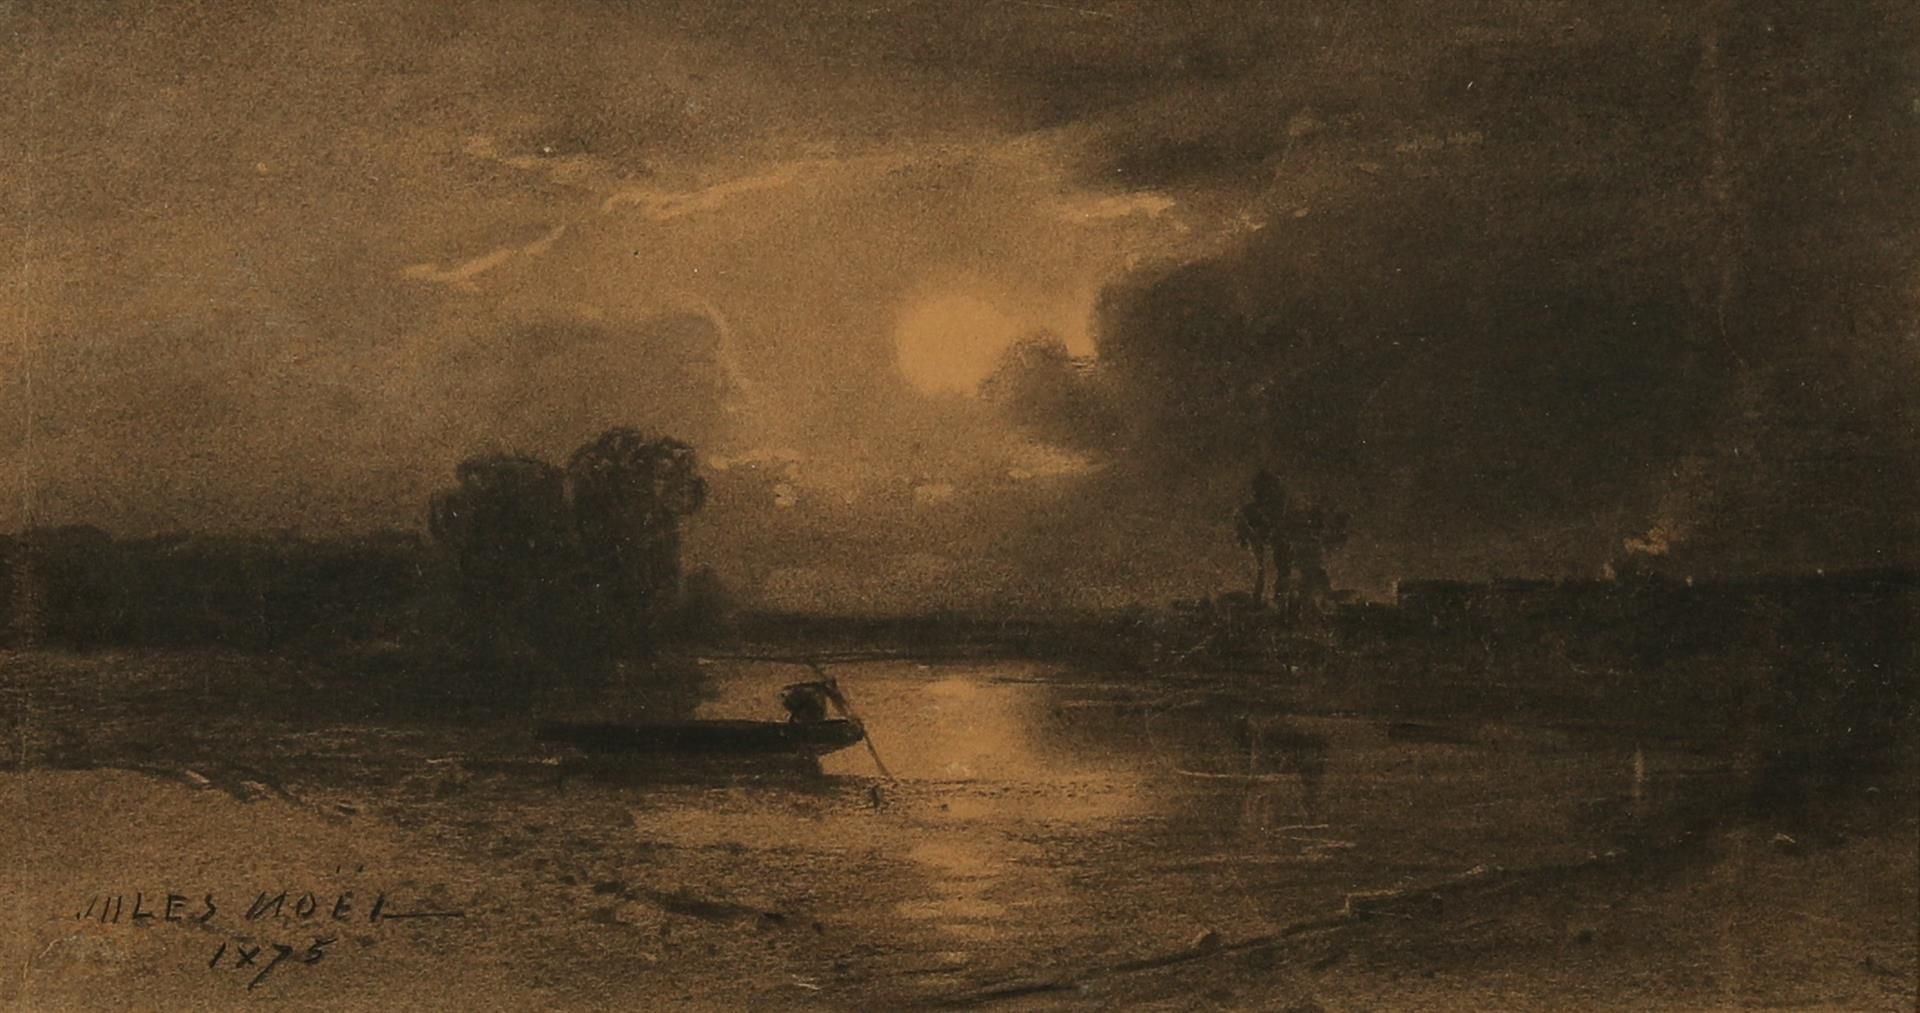 Null 诺尔-朱尔斯 (1810-1881)

"河上的月光 "炭笔画，左下角有签名，日期为1875年 - 20x36（有折叠的痕迹）。